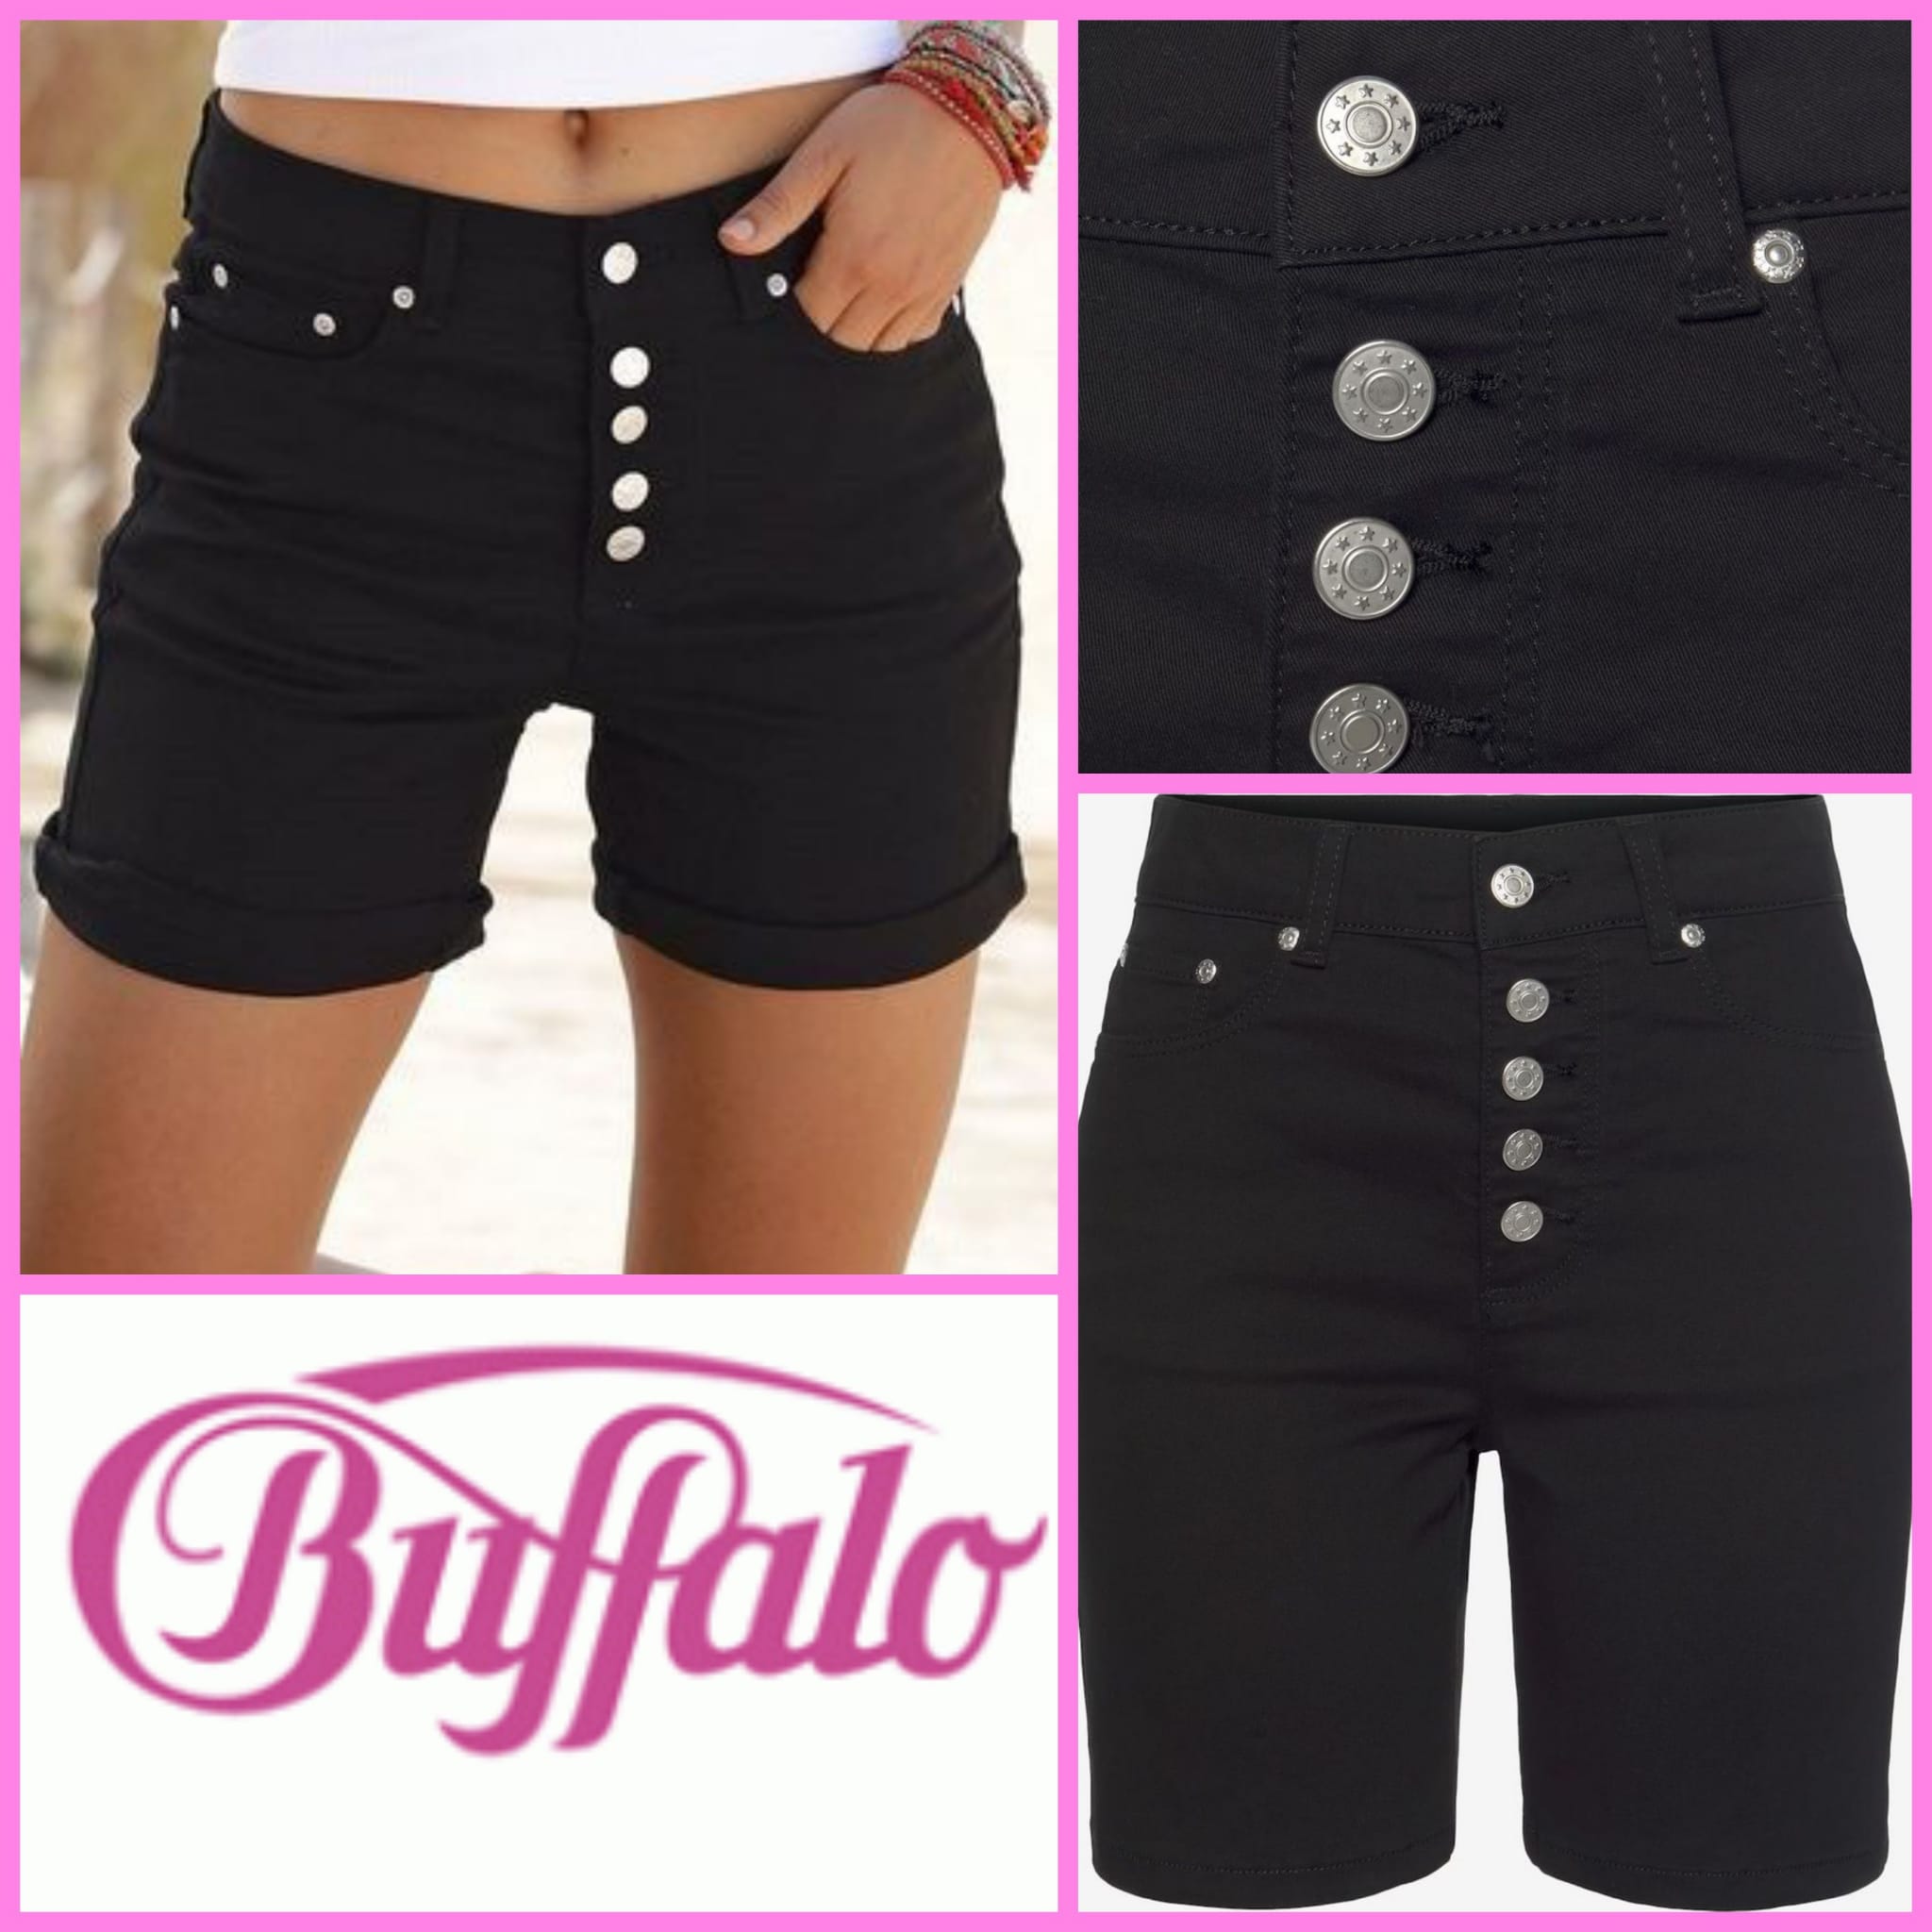 Buffalo women's shorts